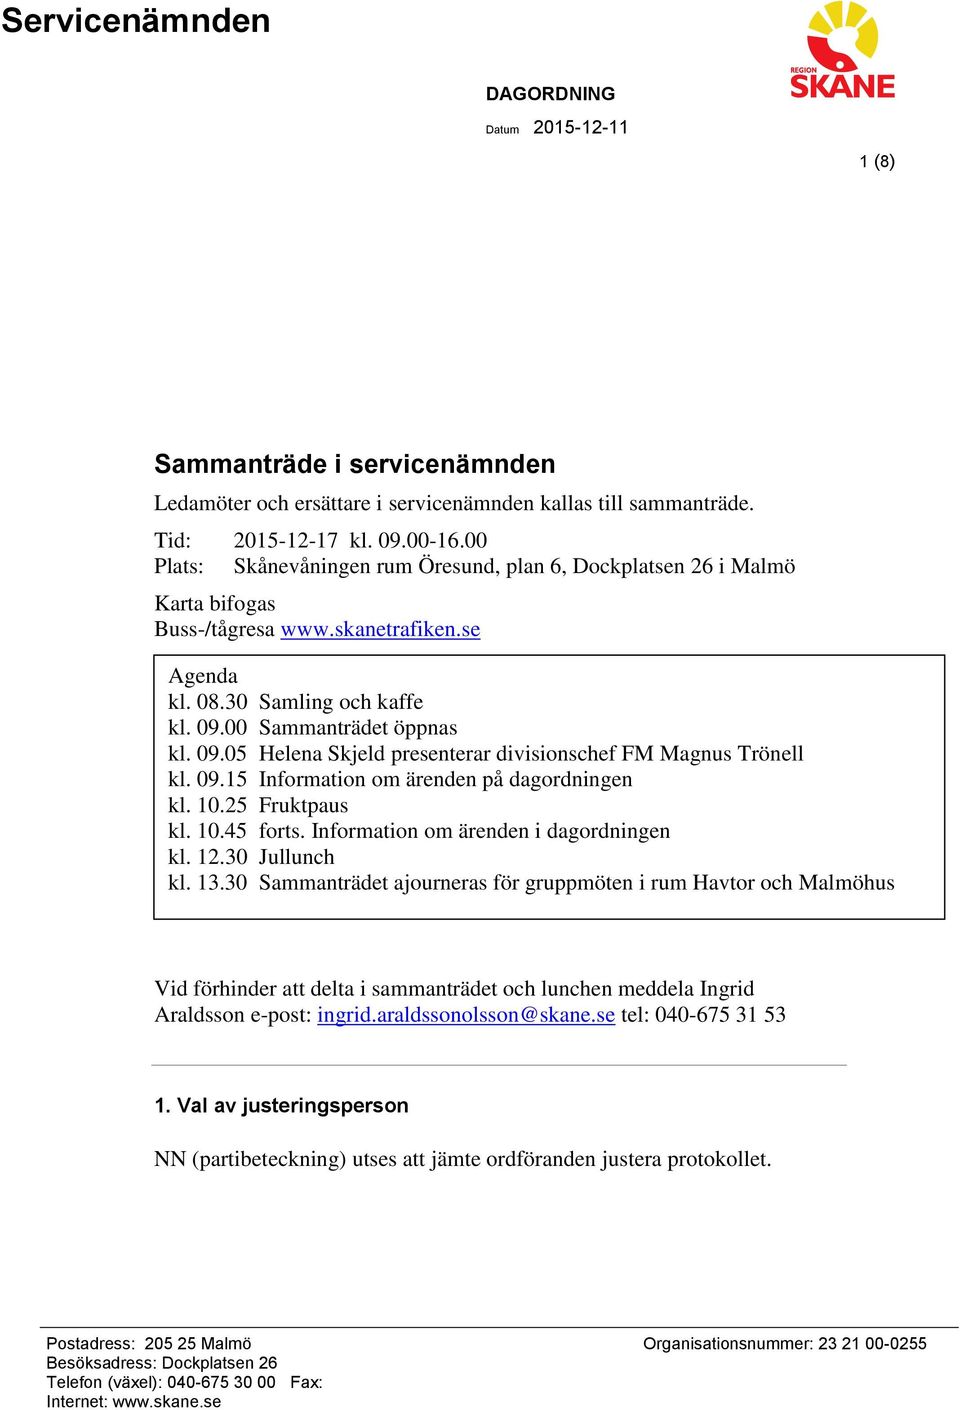 00 Sammanträdet öppnas kl. 09.05 Helena Skjeld presenterar divisionschef FM Magnus Trönell kl. 09.15 Information om ärenden på dagordningen kl. 10.25 Fruktpaus kl. 10.45 forts.